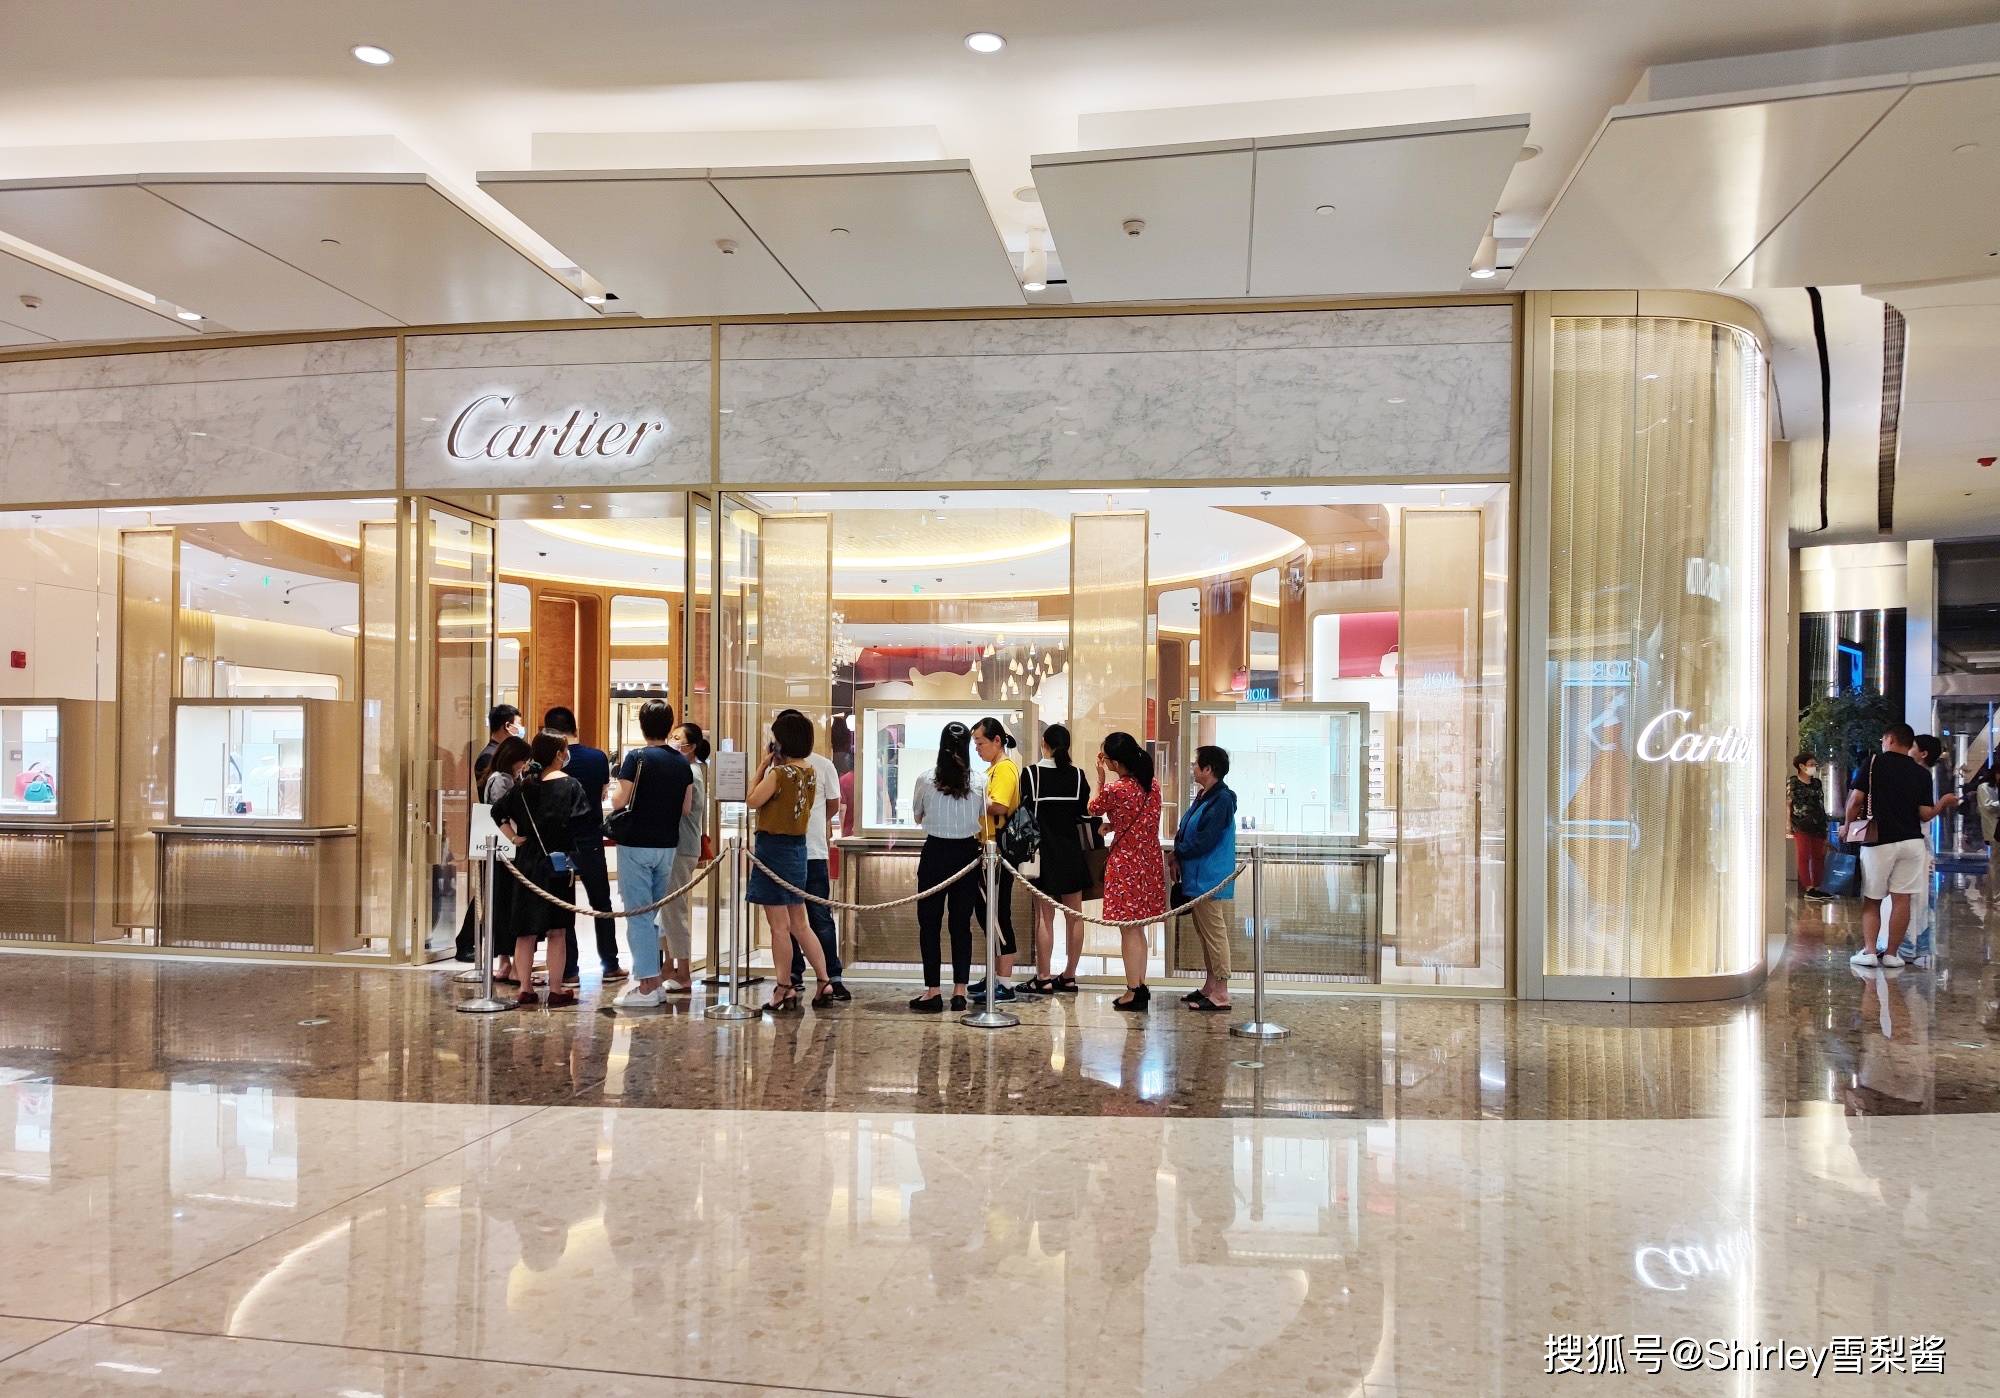 上海最顶级商场,每家奢侈品店铺都大排长队,最贵商品售价1500万